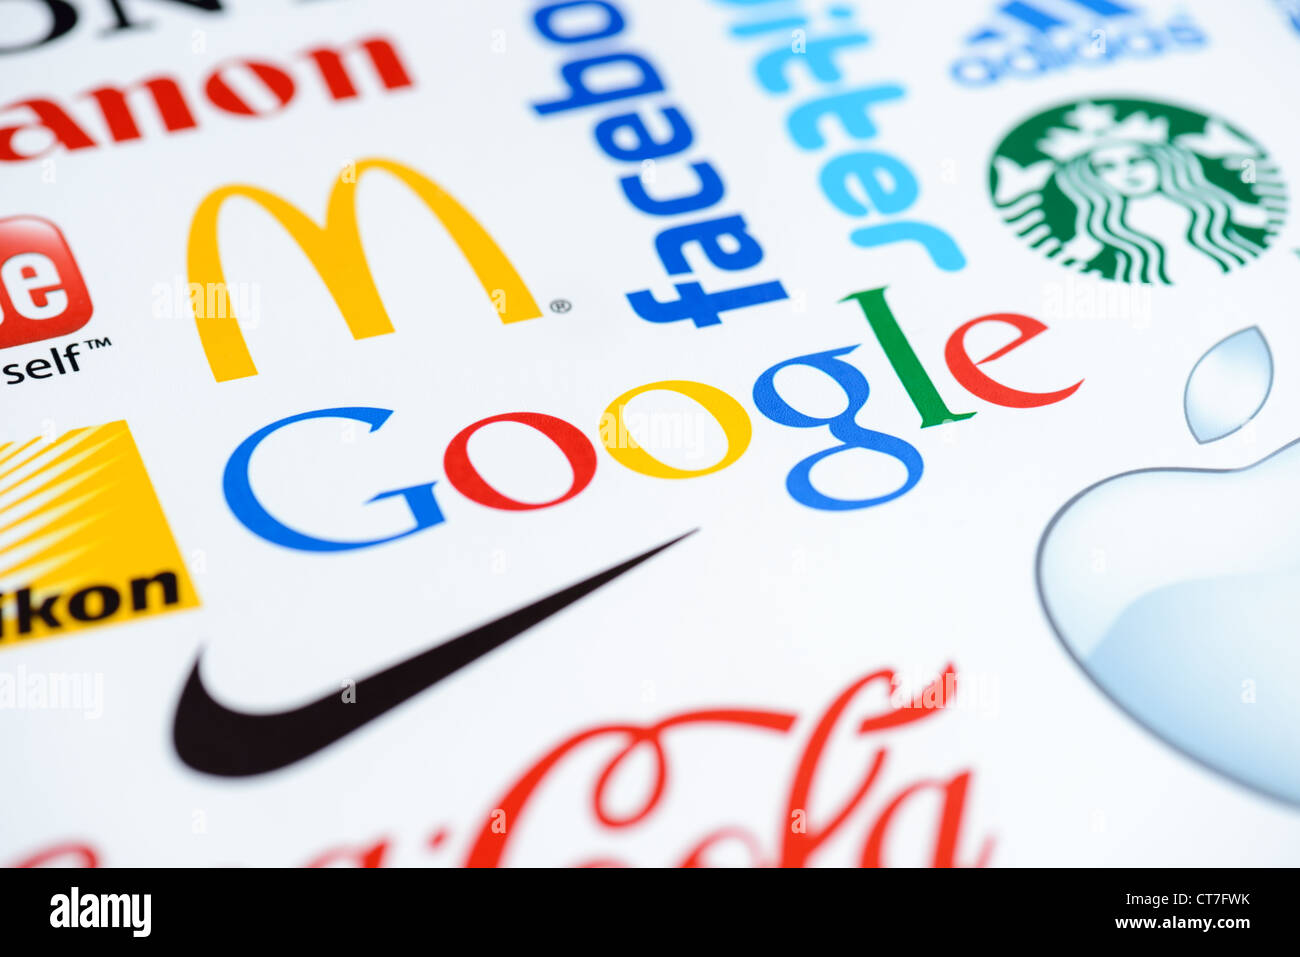 Foto des Google-Logos auf dem bedruckten Papier zusammen mit einer Sammlung von bekannten Marken der Welt hautnah. Stockfoto